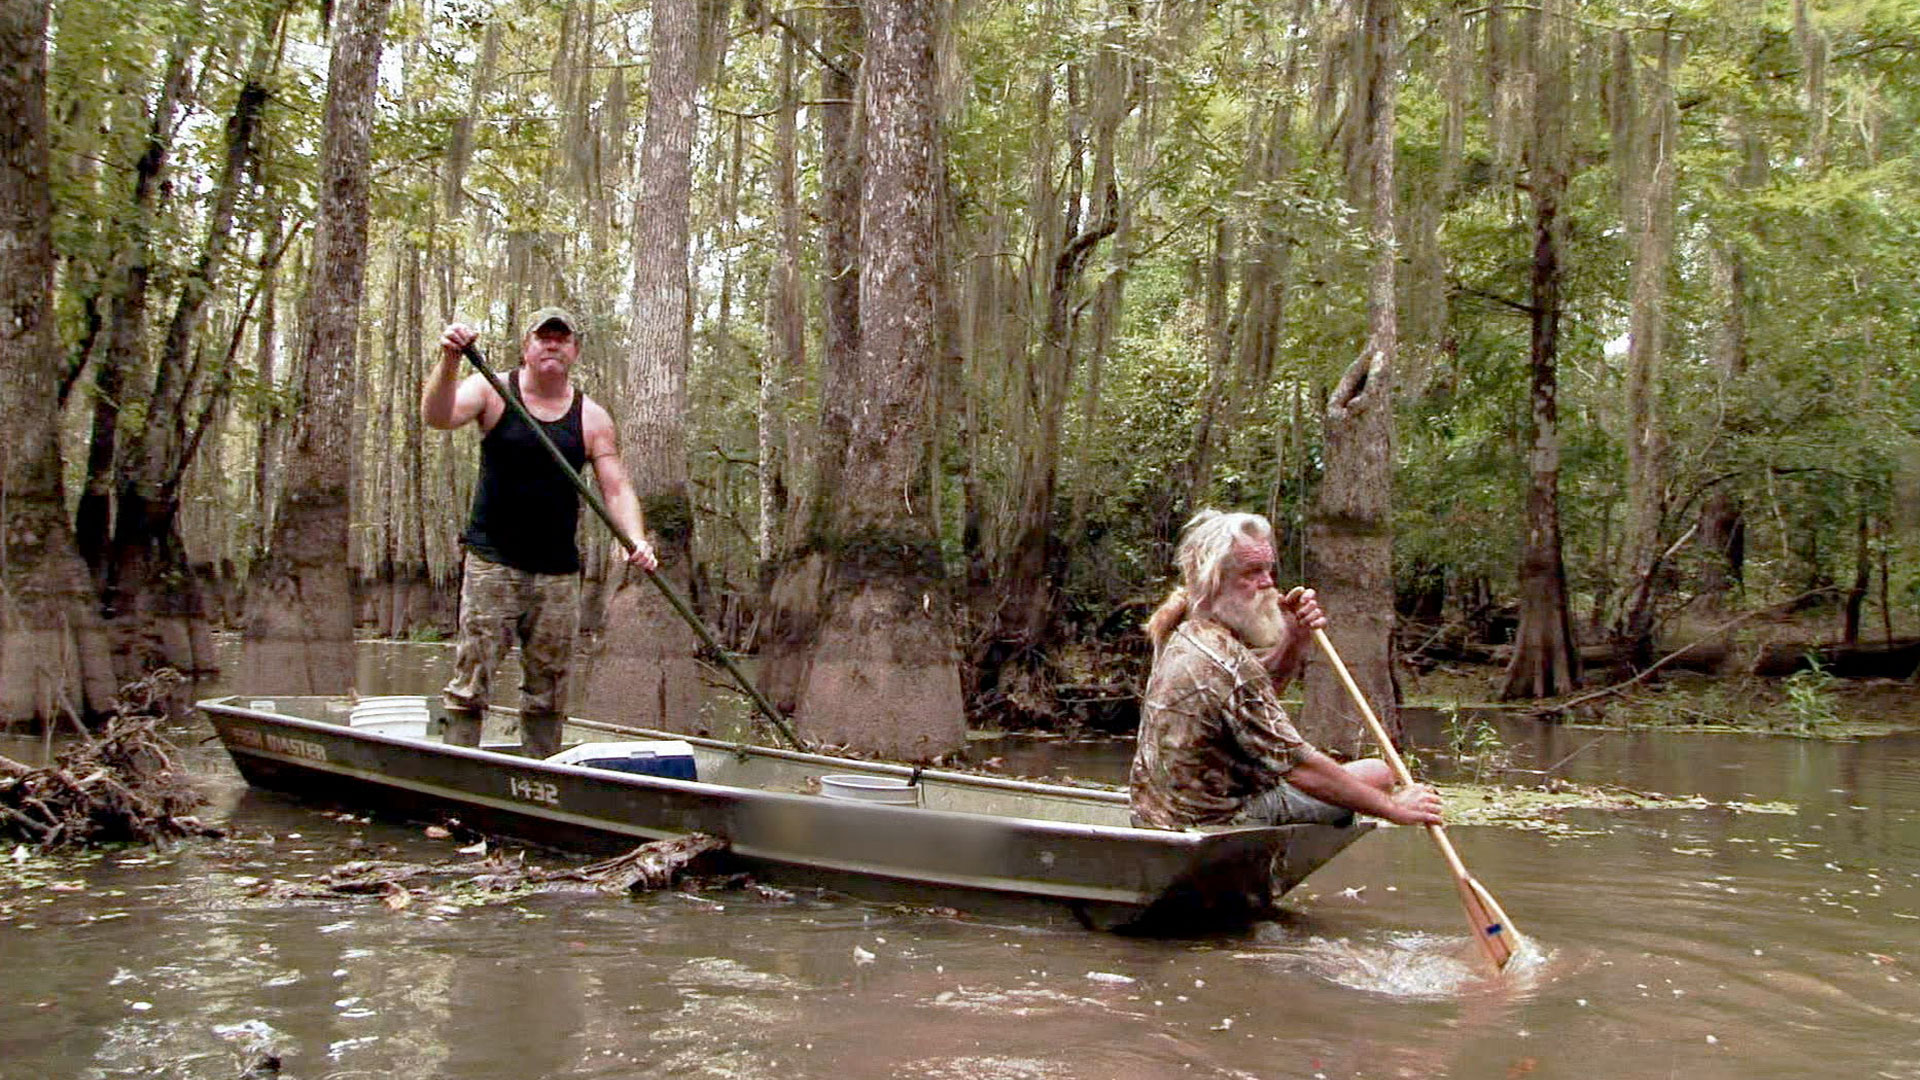 Watch Swamp People Season 5 Episode 4 HISTORY Channel.